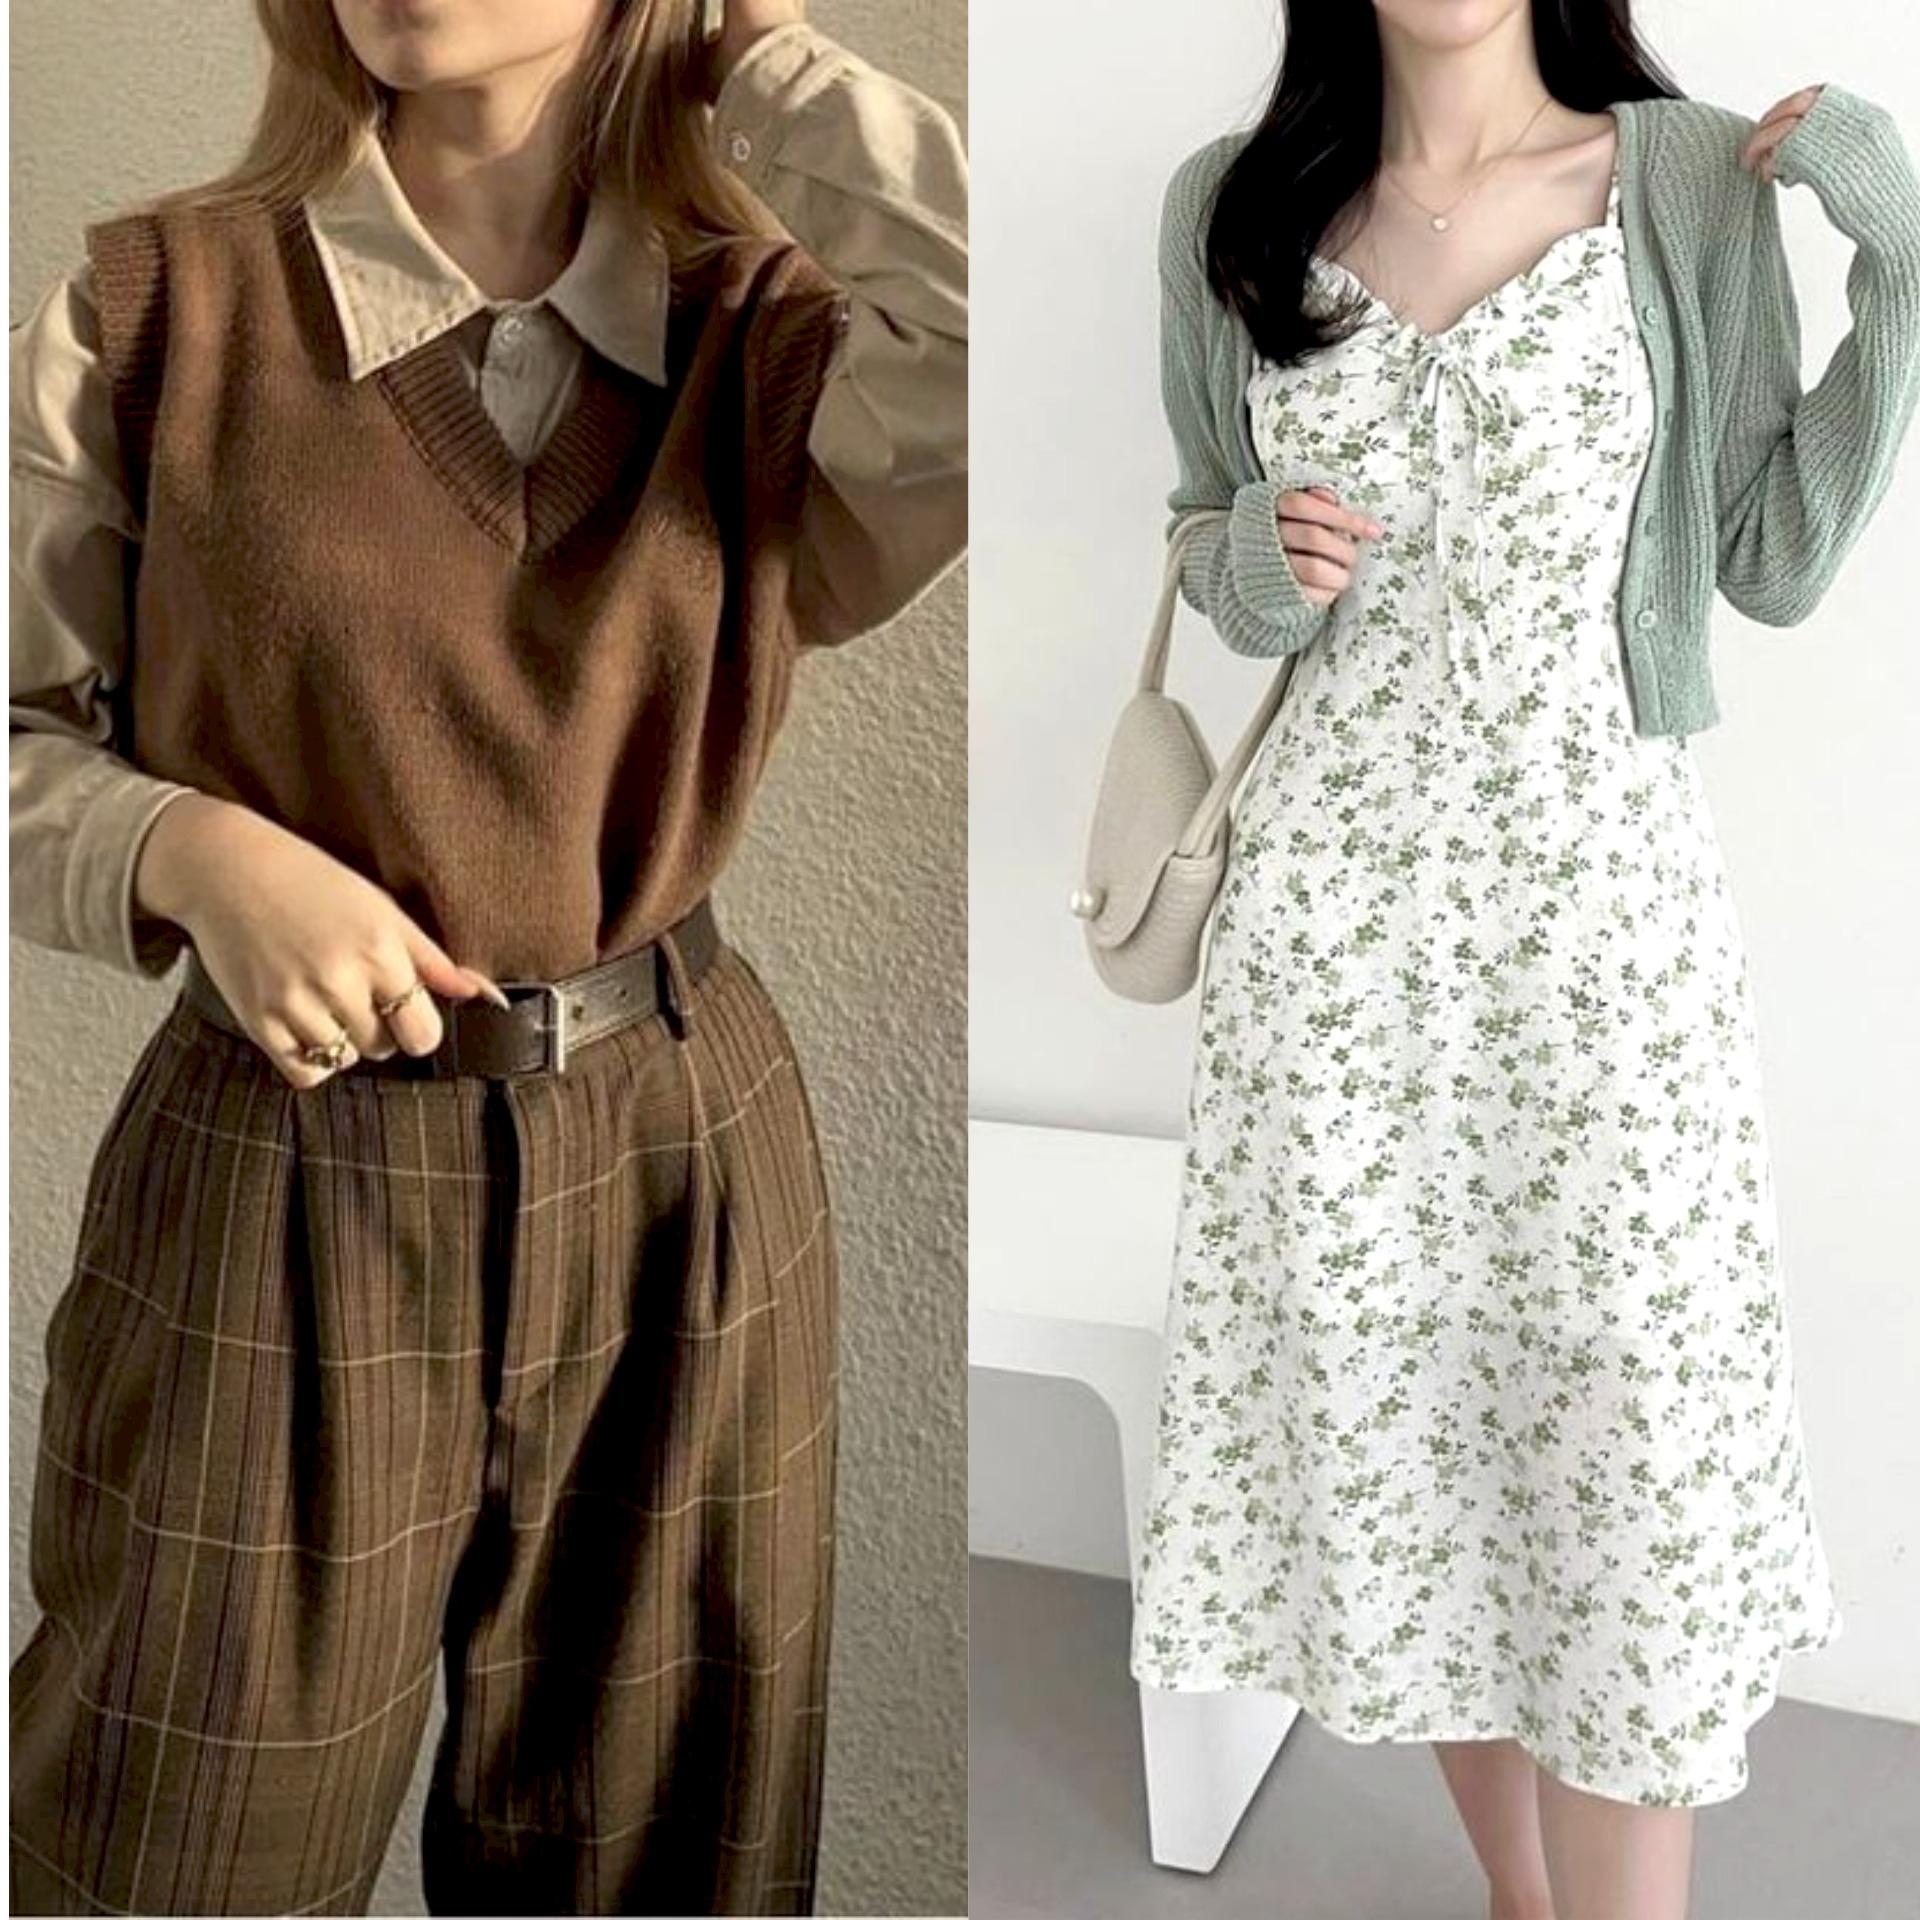 20+ Ide Outfit Vintage-Modern yang Menawan untuk Tampil Stylish dan ...